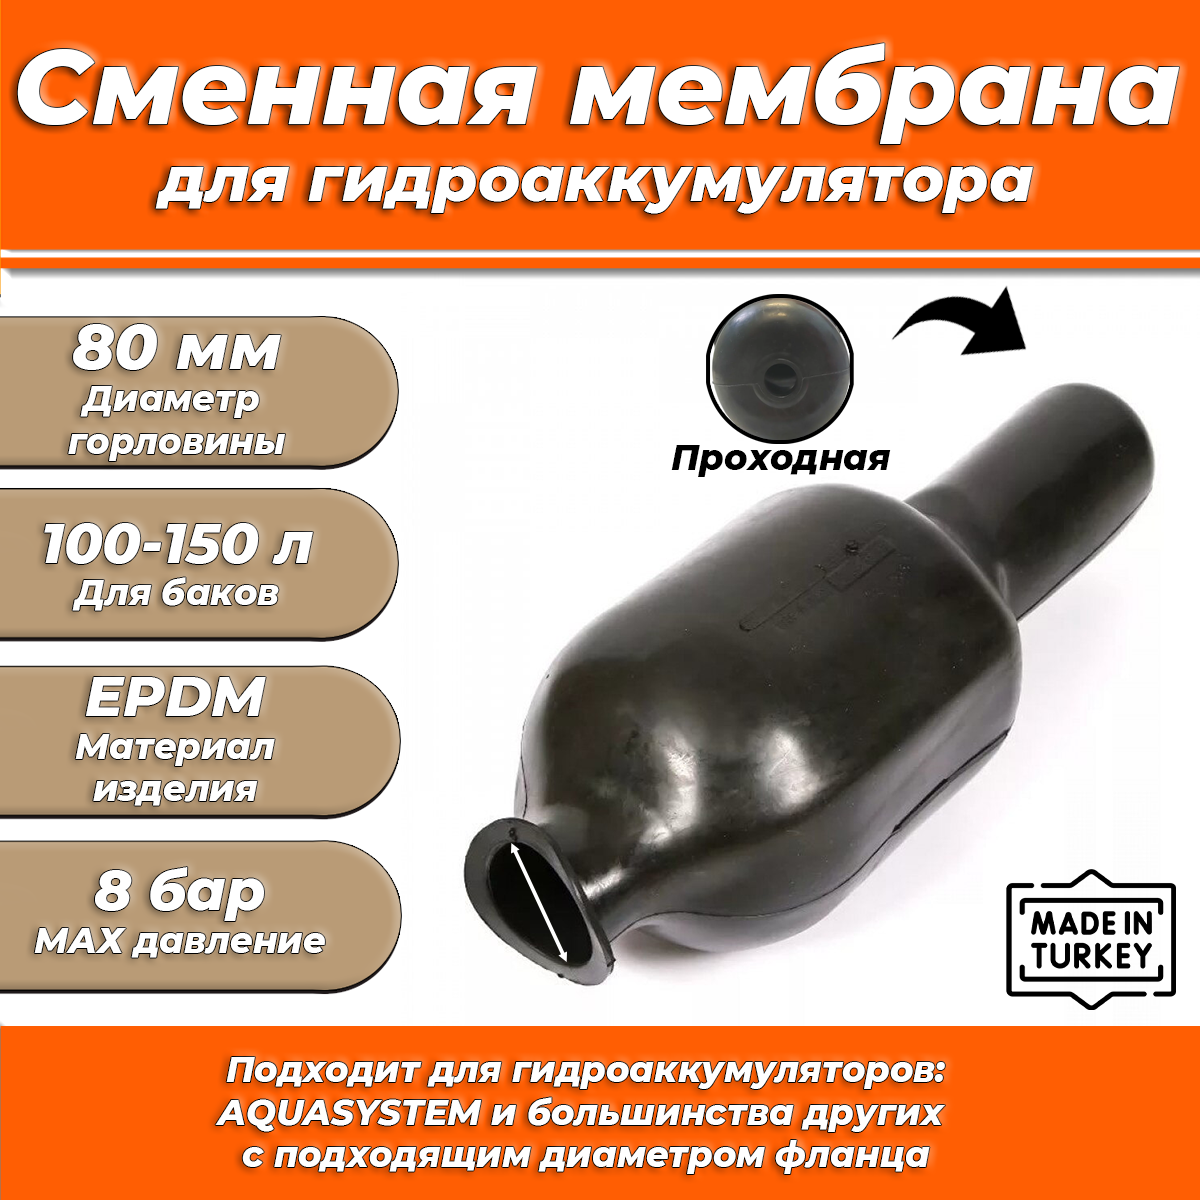 Мембрана для гидроаккумулятора Euromax 100-150 (80/110/650мм, проходная)